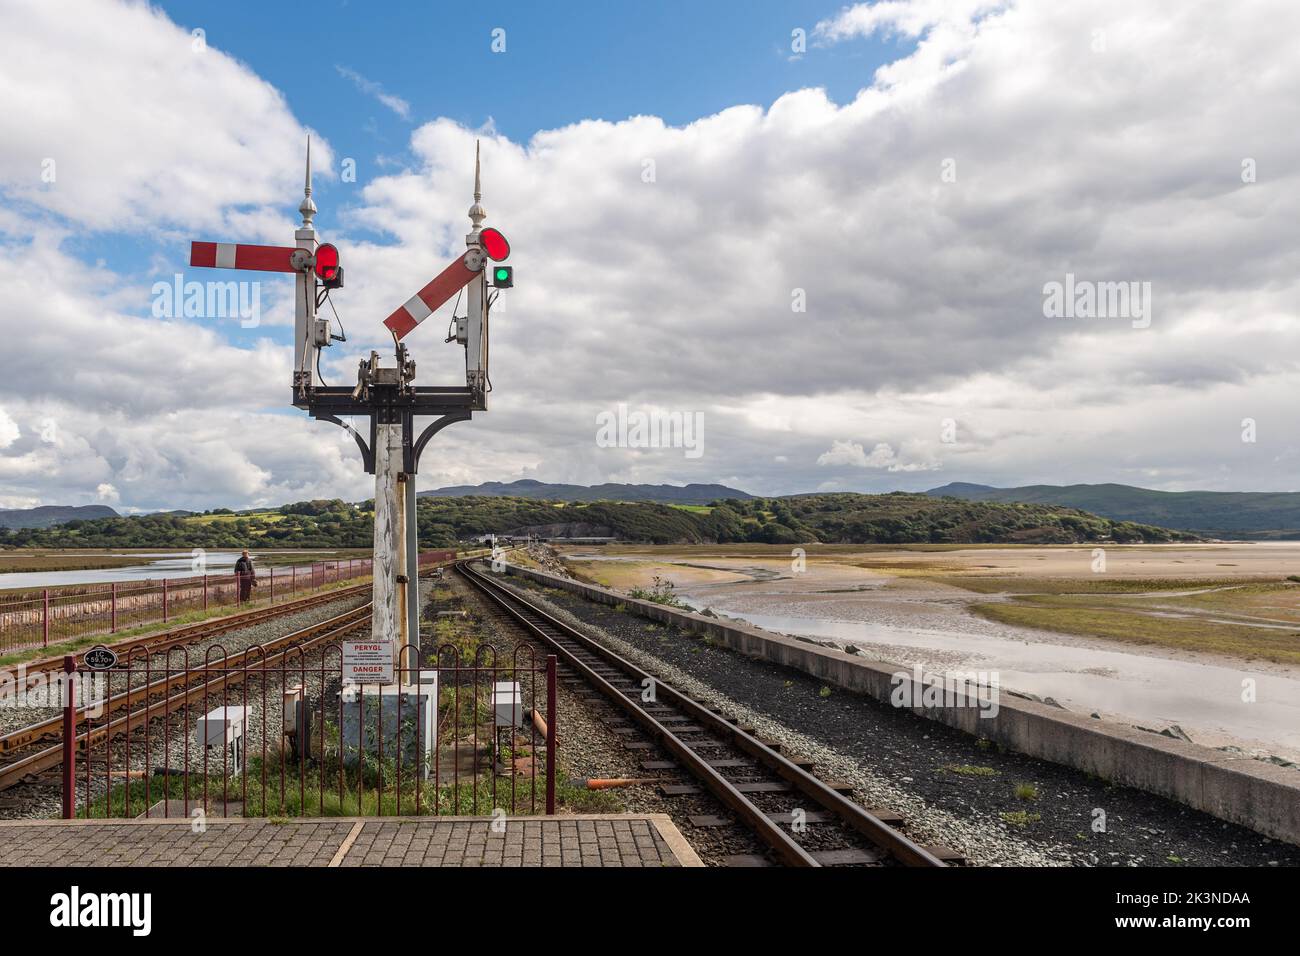 Segnale alla stazione di Porthmadog sulla ferrovia a scartamento ridotto Bleanau Ffestiniog, Galles del Nord, Regno Unito. Foto Stock